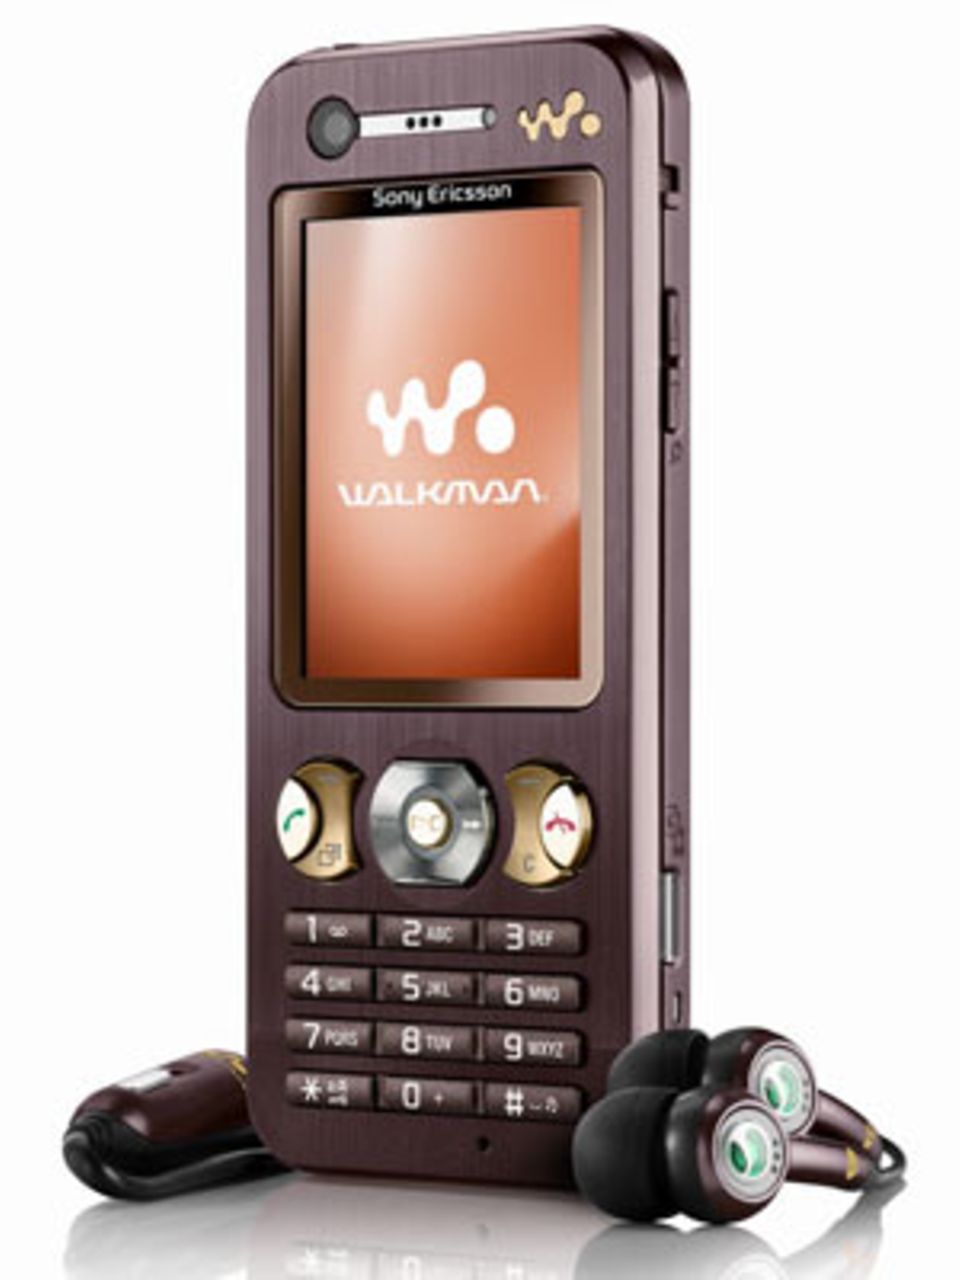 "Sony Ericsson Walkman" Für die Plaudertaschen unter uns ist wohl das Sony Ericsson Walkman das passende Handy. Bis zu 540 Minuten Sprechzeit können da in einem Rutsch verbraten werden. Außerdem mit dabei: MMS, Videofunktion und natürlich mp3-Player und Radio. Um 135 Euro ohne Vertrag.